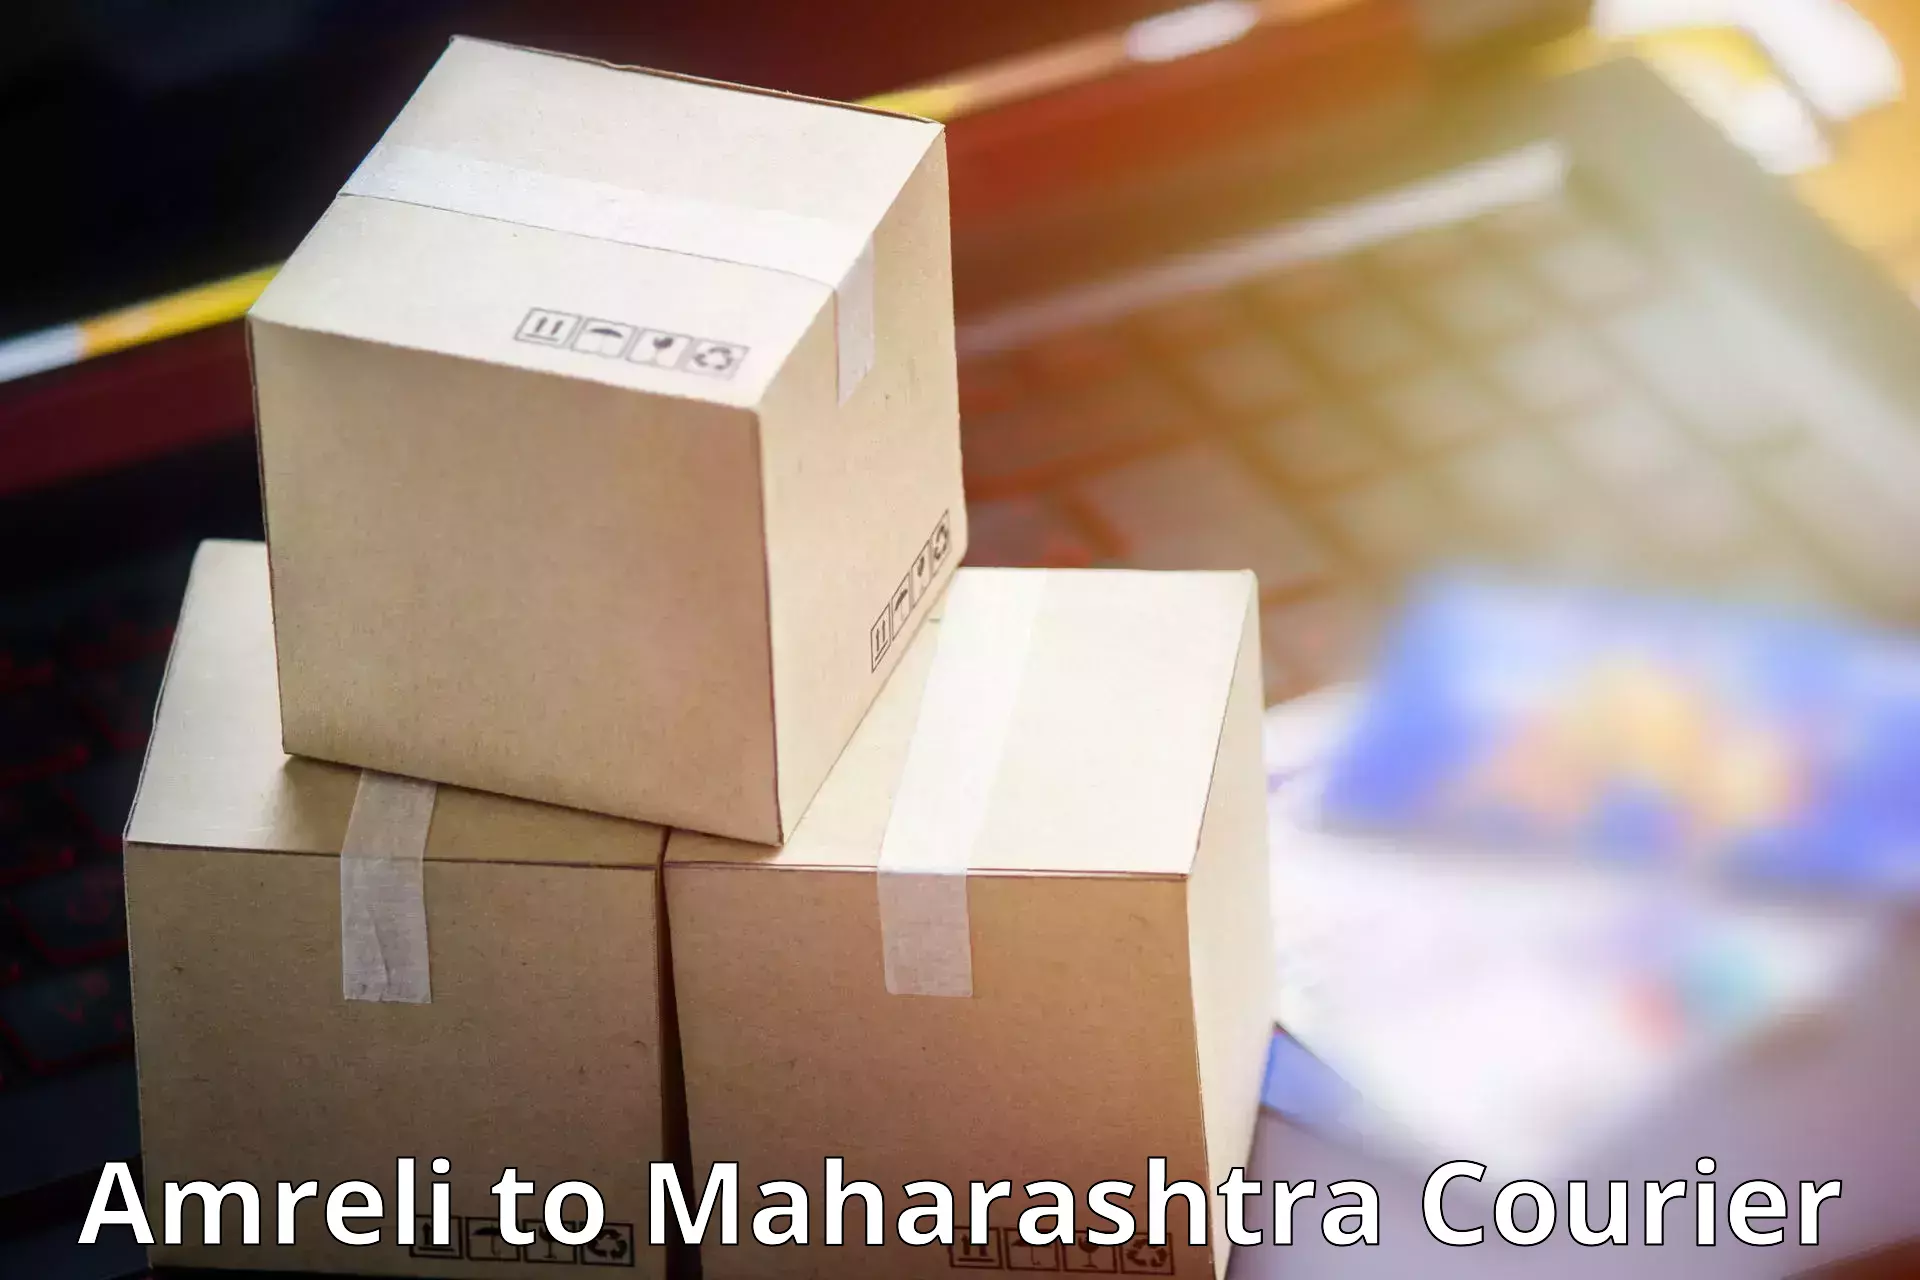 Multi-city courier Amreli to Mumbai Port